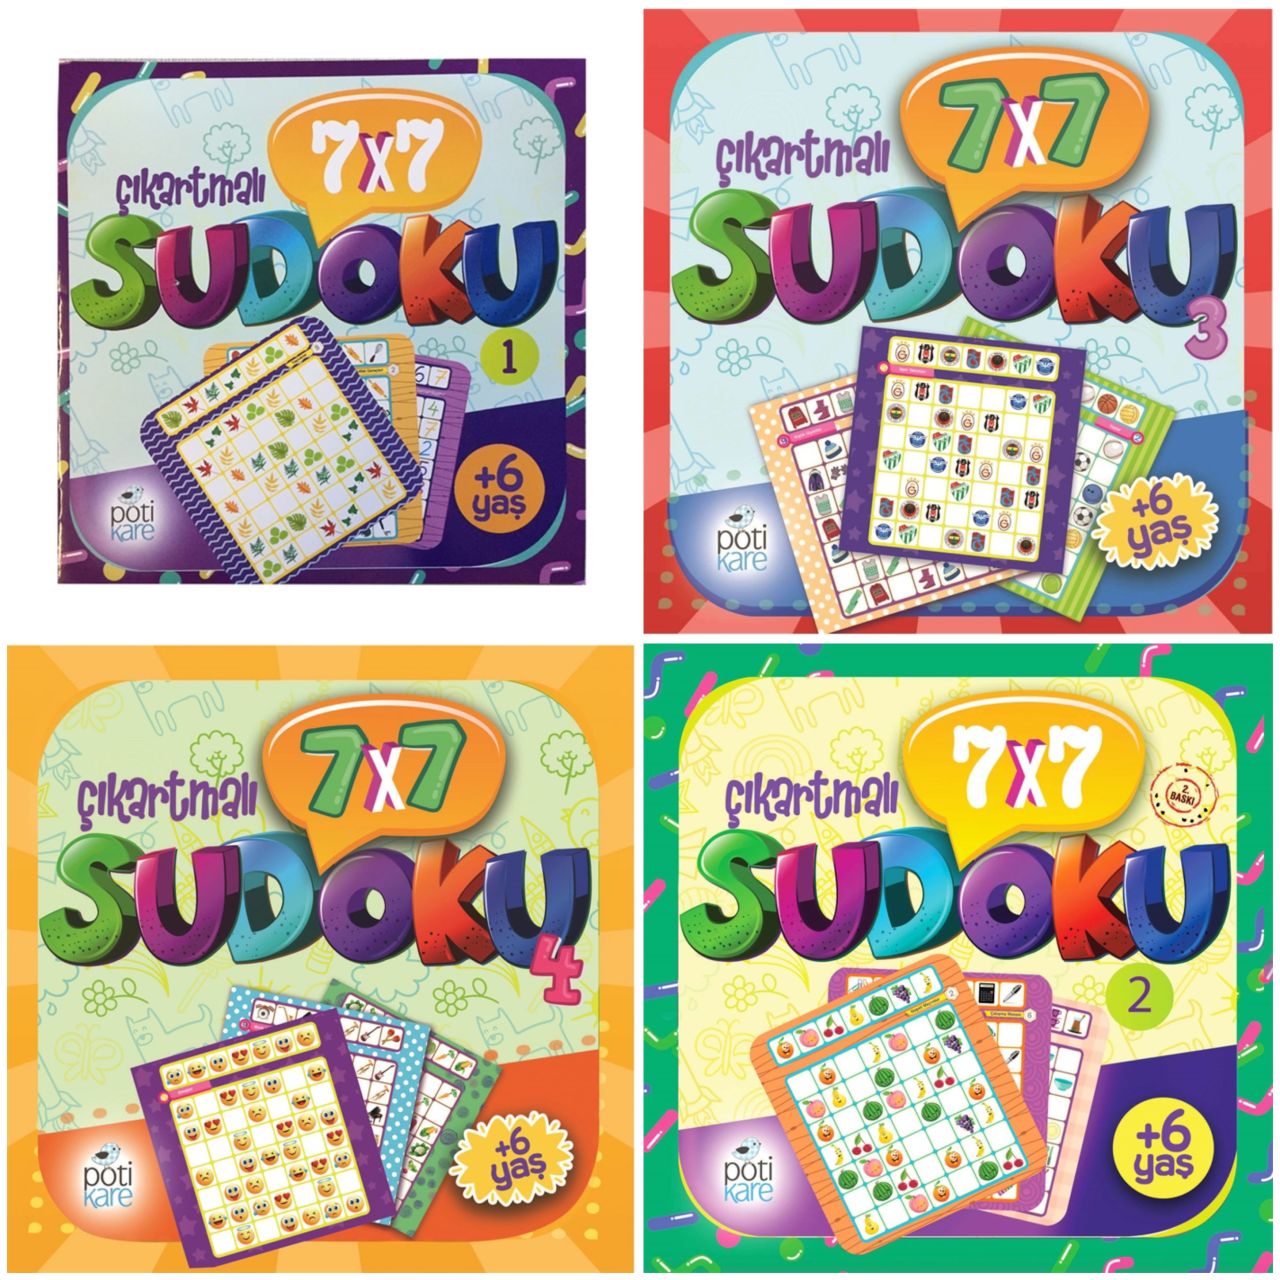 6 yas Sudoku (7X7 Çıkartmalı Sudoku) - 4 Kitap